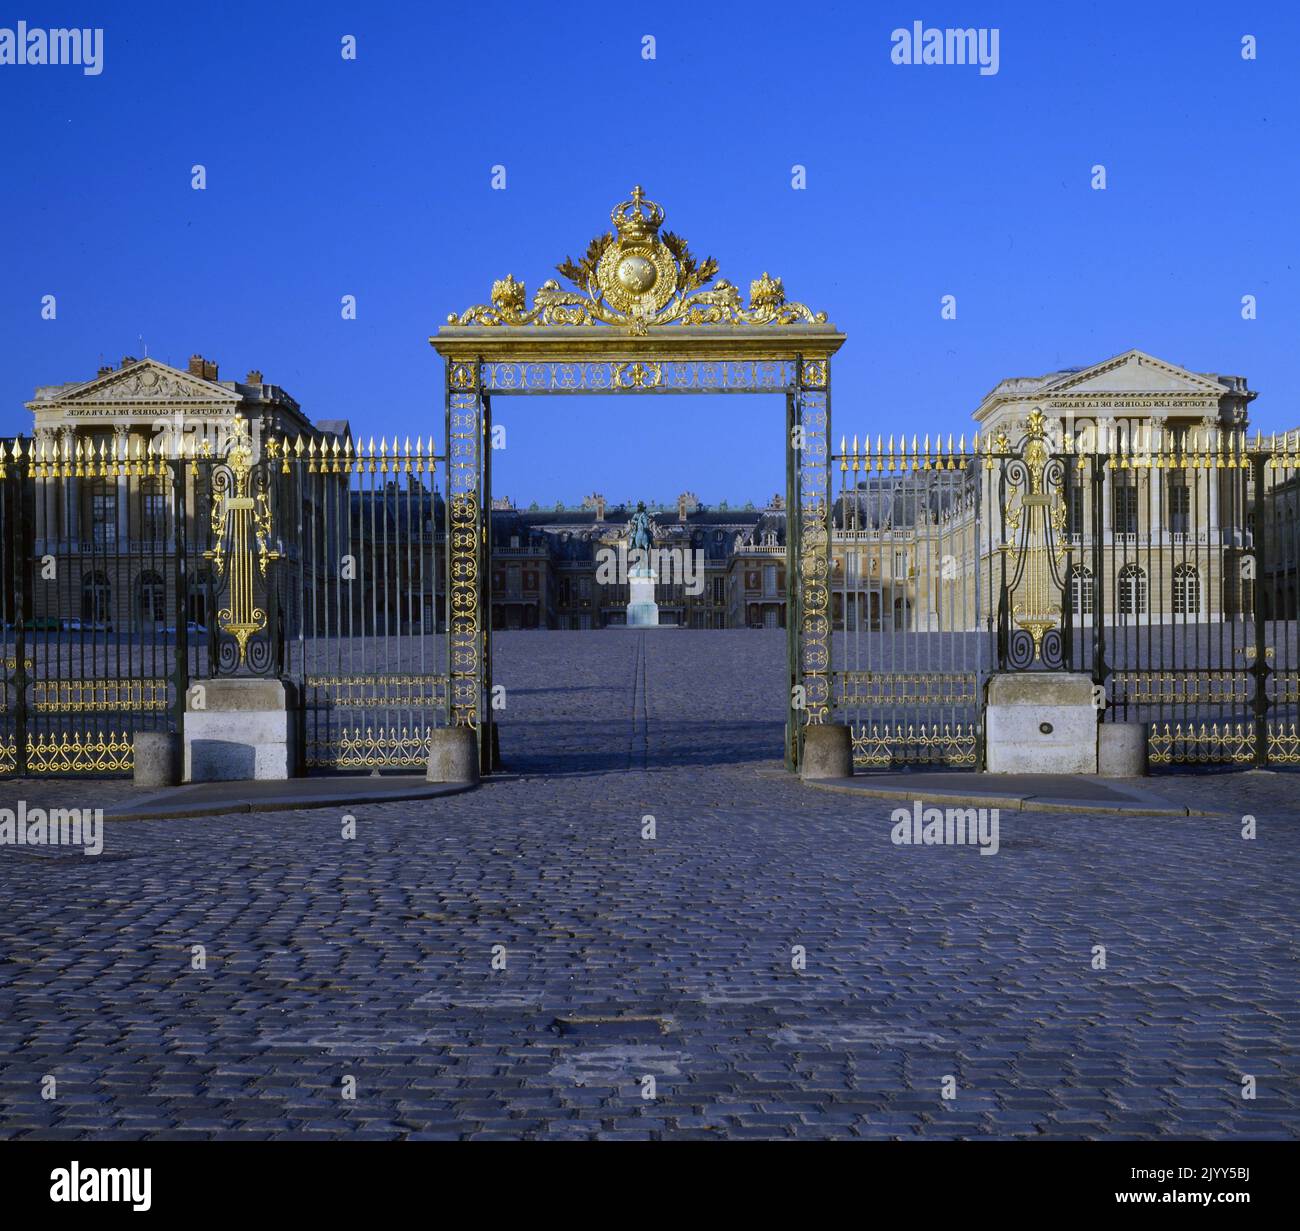 Vergoldete Tore zum Schloss von Versailles. Versailles war ein königliches Schloss in der Region Ile-de-France in Frankreich. Versailles war ab 1682 der Sitz der politischen Macht im Königreich Frankreich, als König Ludwig XIV. Den königlichen Hof von Paris verlegte, bis die königliche Familie im Oktober 1789, innerhalb von drei Monaten nach Beginn der Französischen Revolution, gezwungen wurde, in die Hauptstadt zurückzukehren Stockfoto